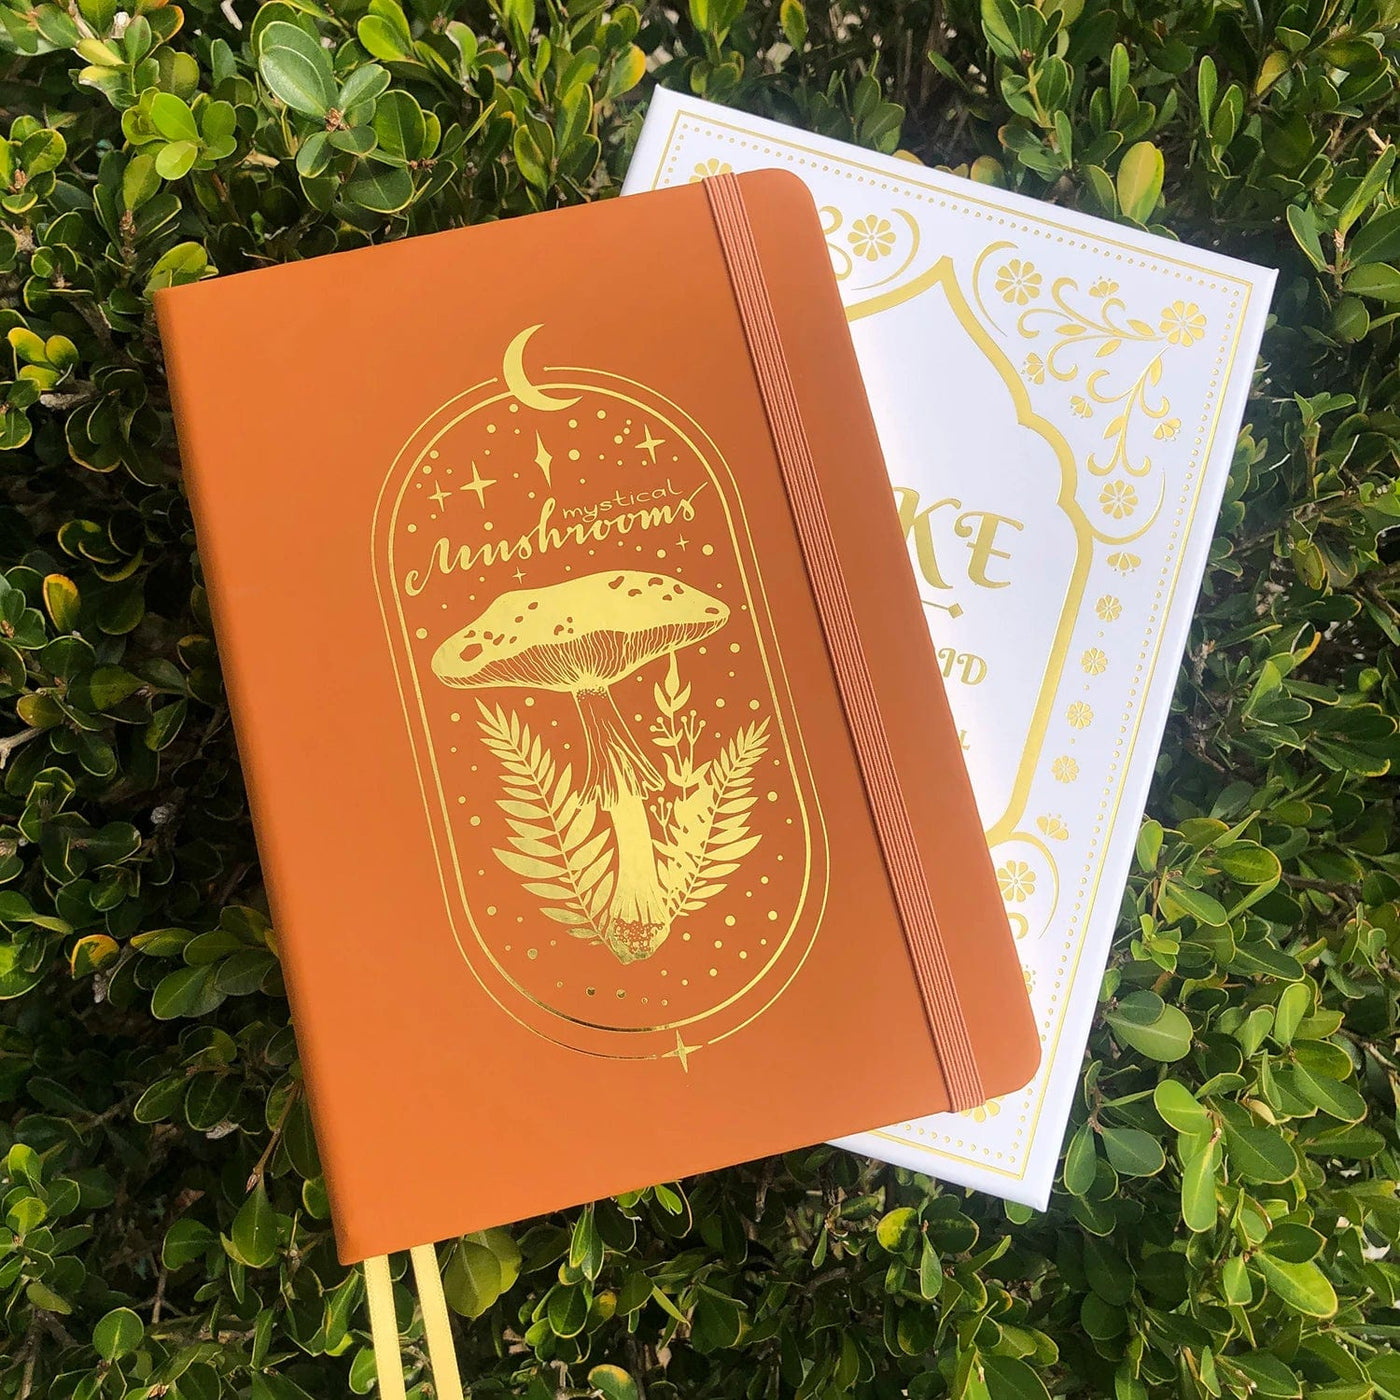 wickedafstore Brown Mystical Mushroom Journal